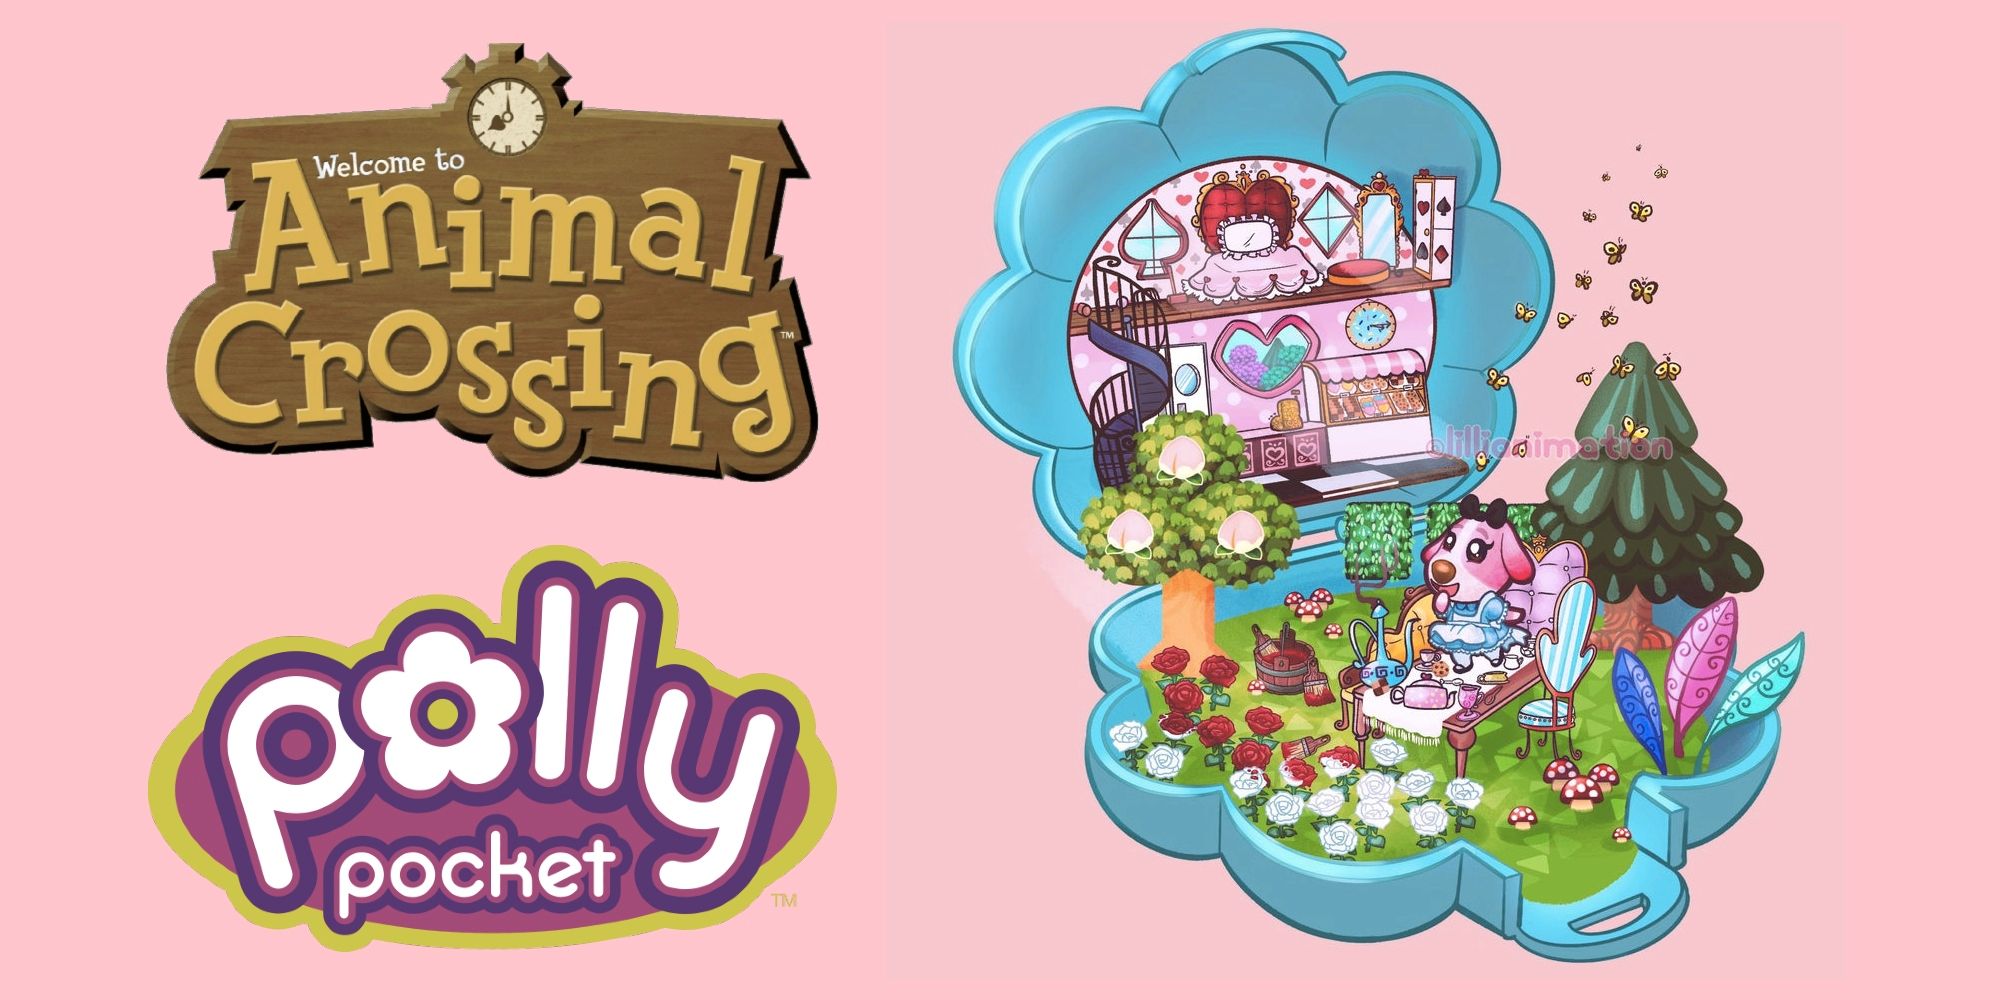 El arte de personajes estilo Polly Pocket de Animal Crossing Player es un crossover perfecto